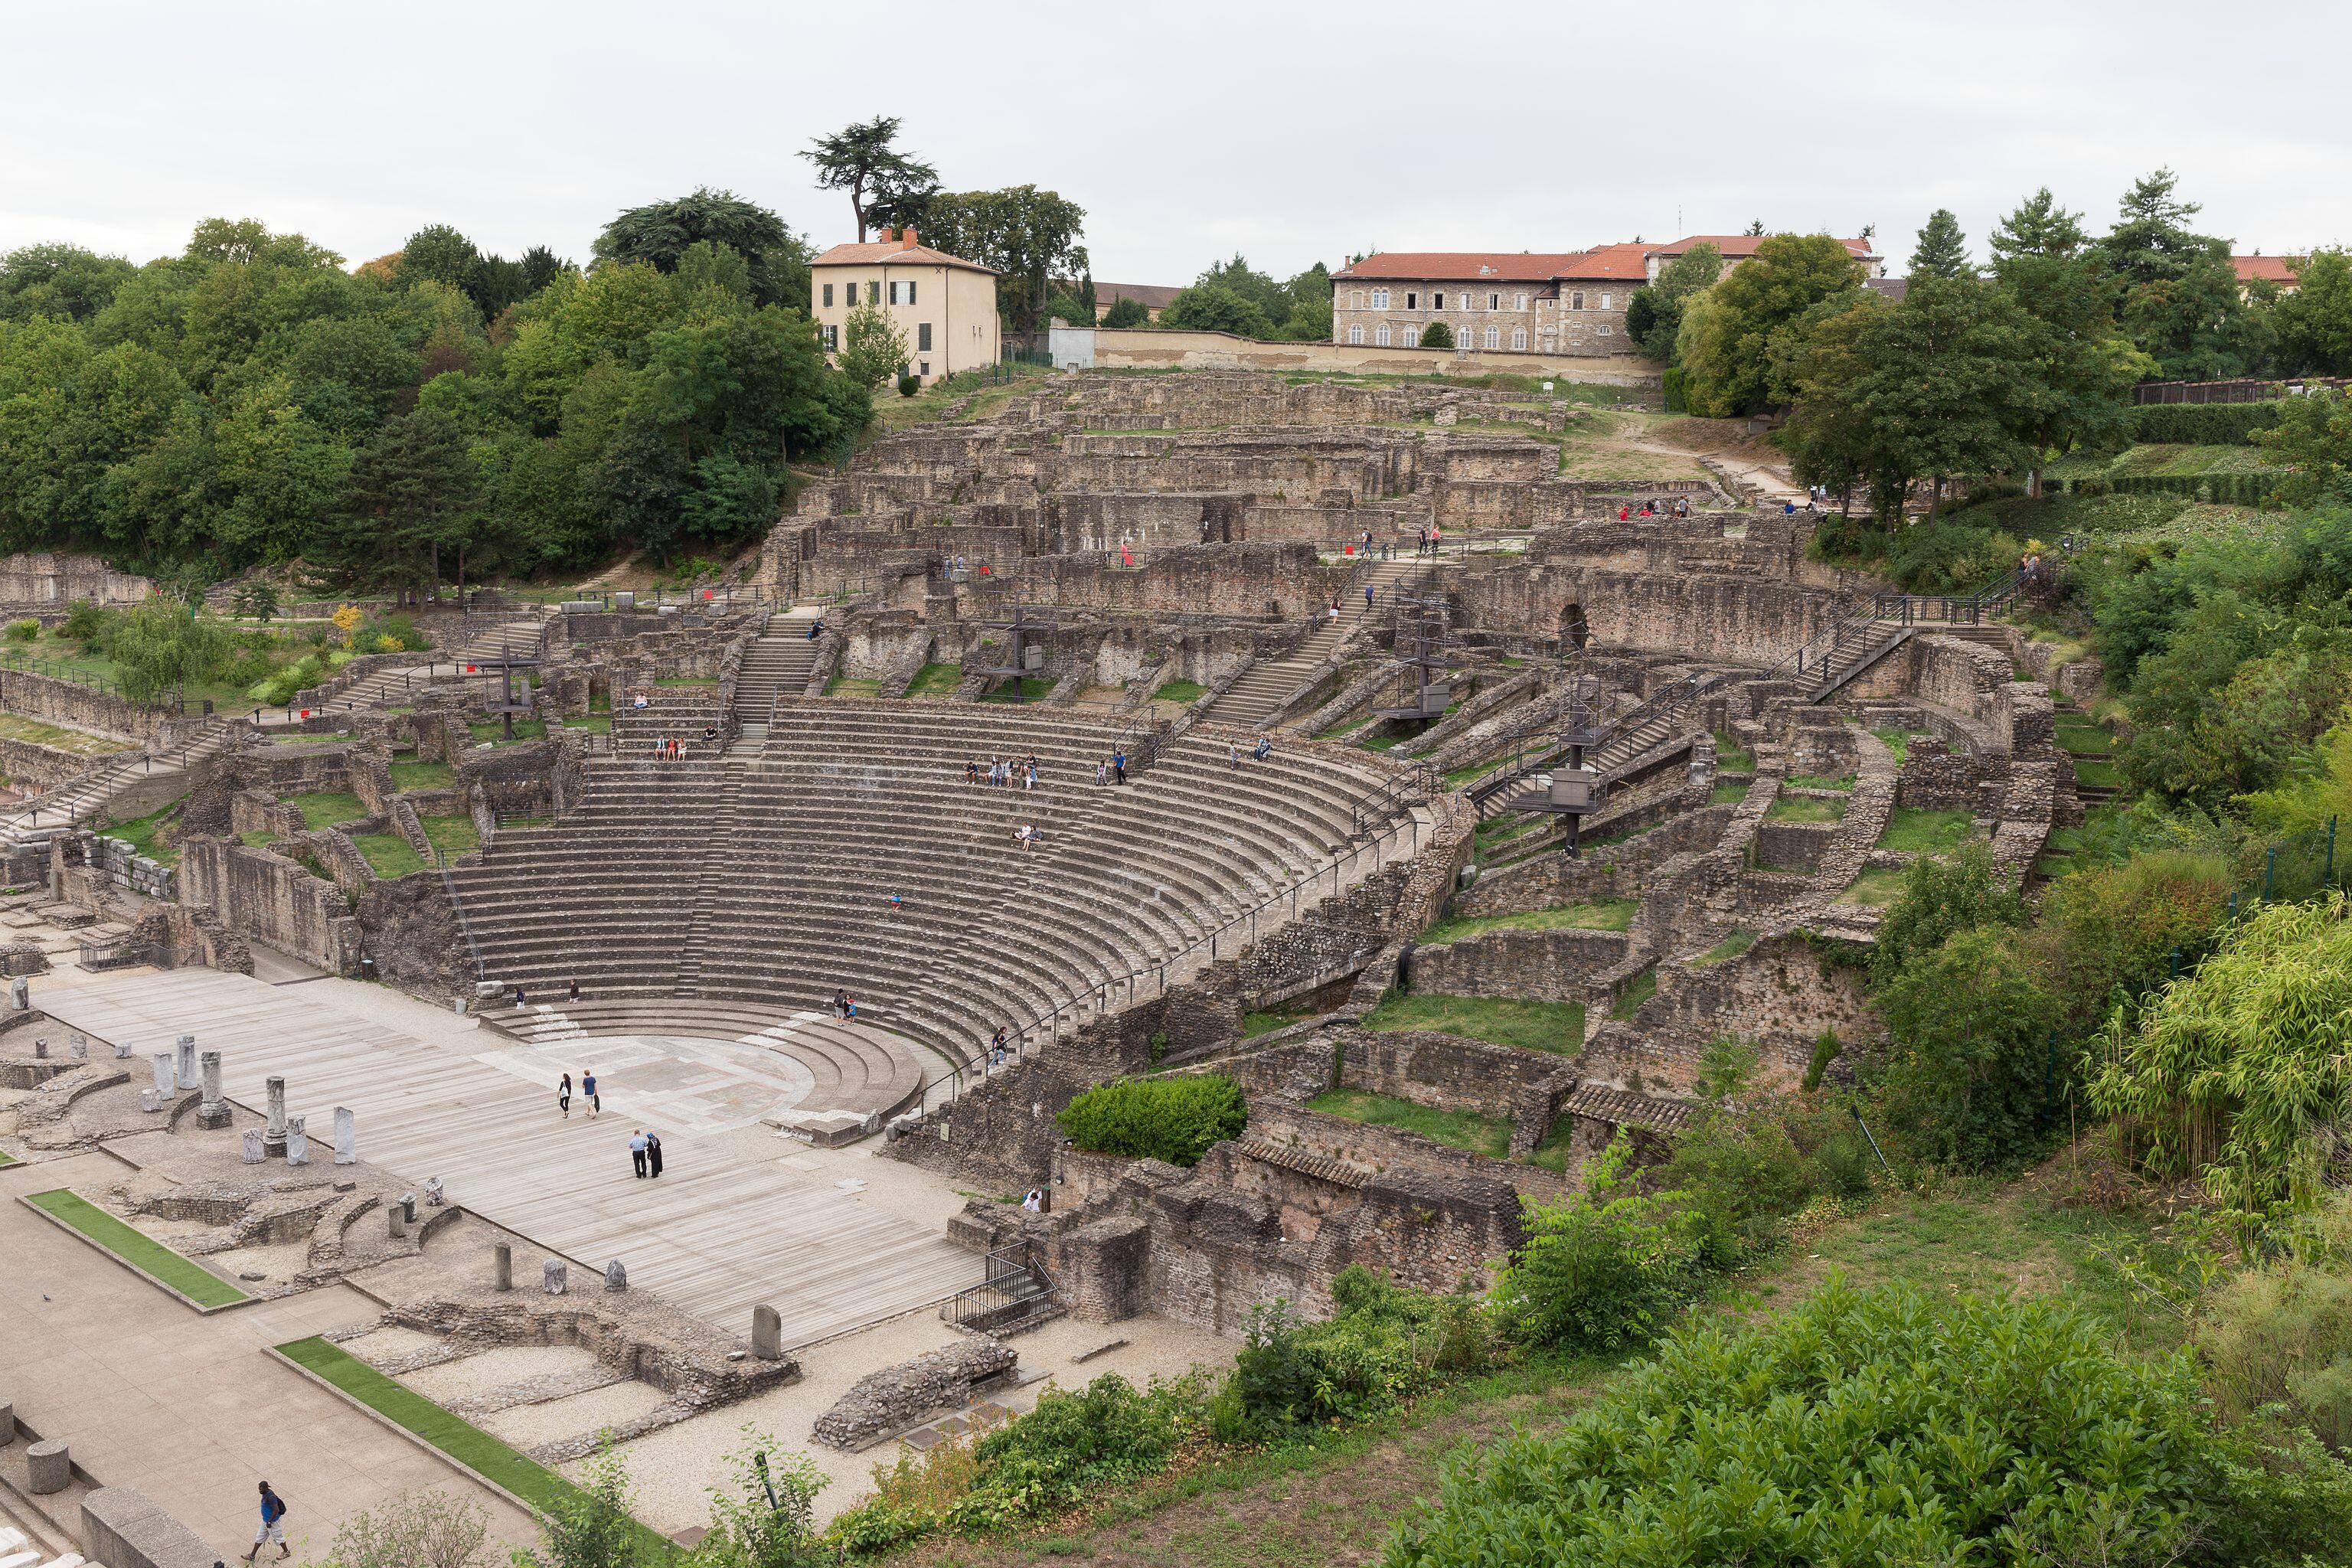 Théâtre antique de Lyon dans le 5e arrondissement de Lyon : vue d'ensemble depuis la terrasse du musée gallo-romain.